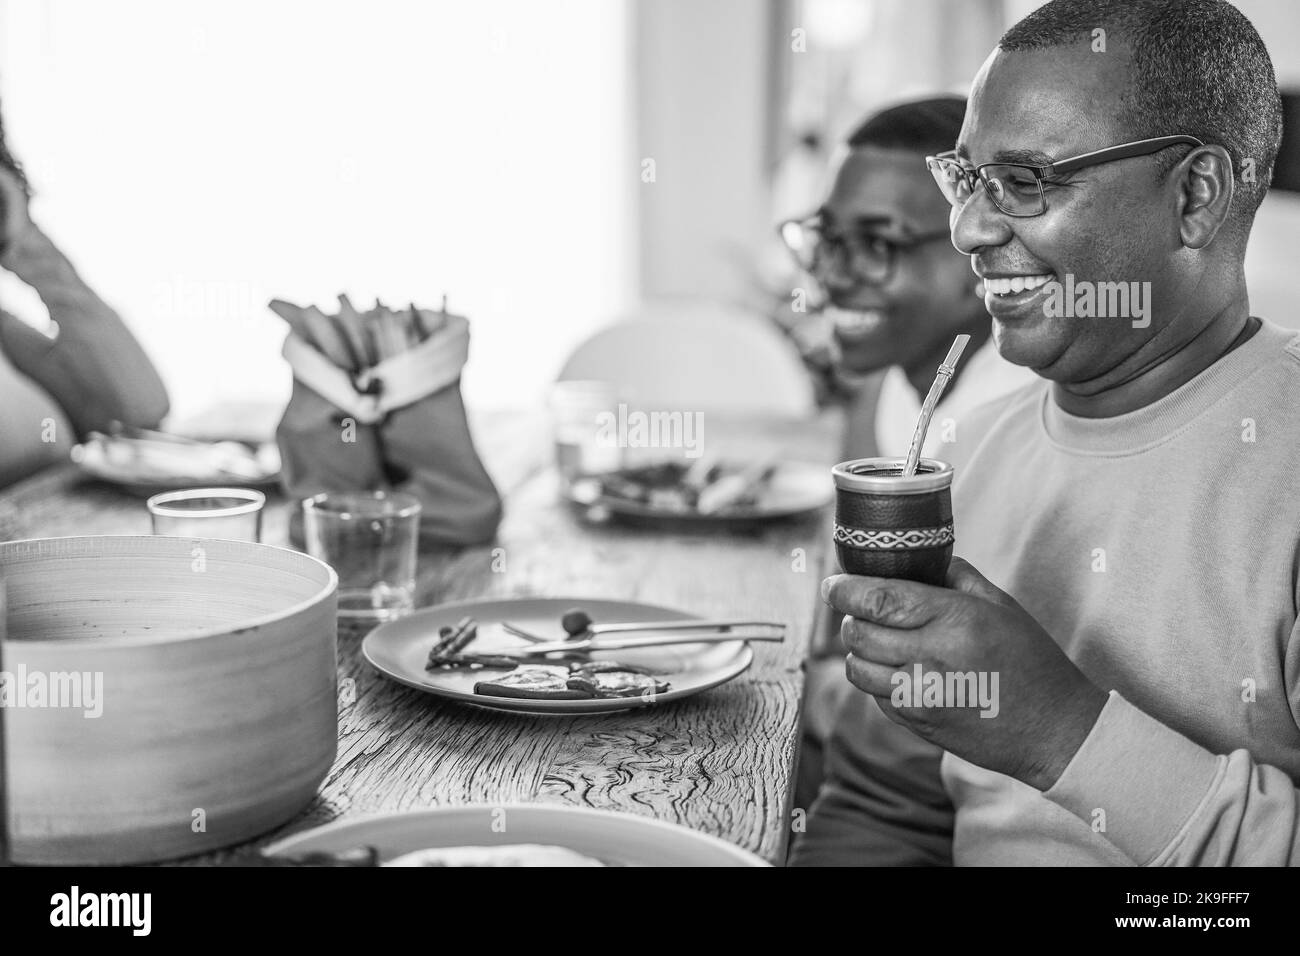 Heureux père noir buvant yerba mate pendant le déjeuner à la maison - foyer principal sur la paille - montage noir et blanc Banque D'Images